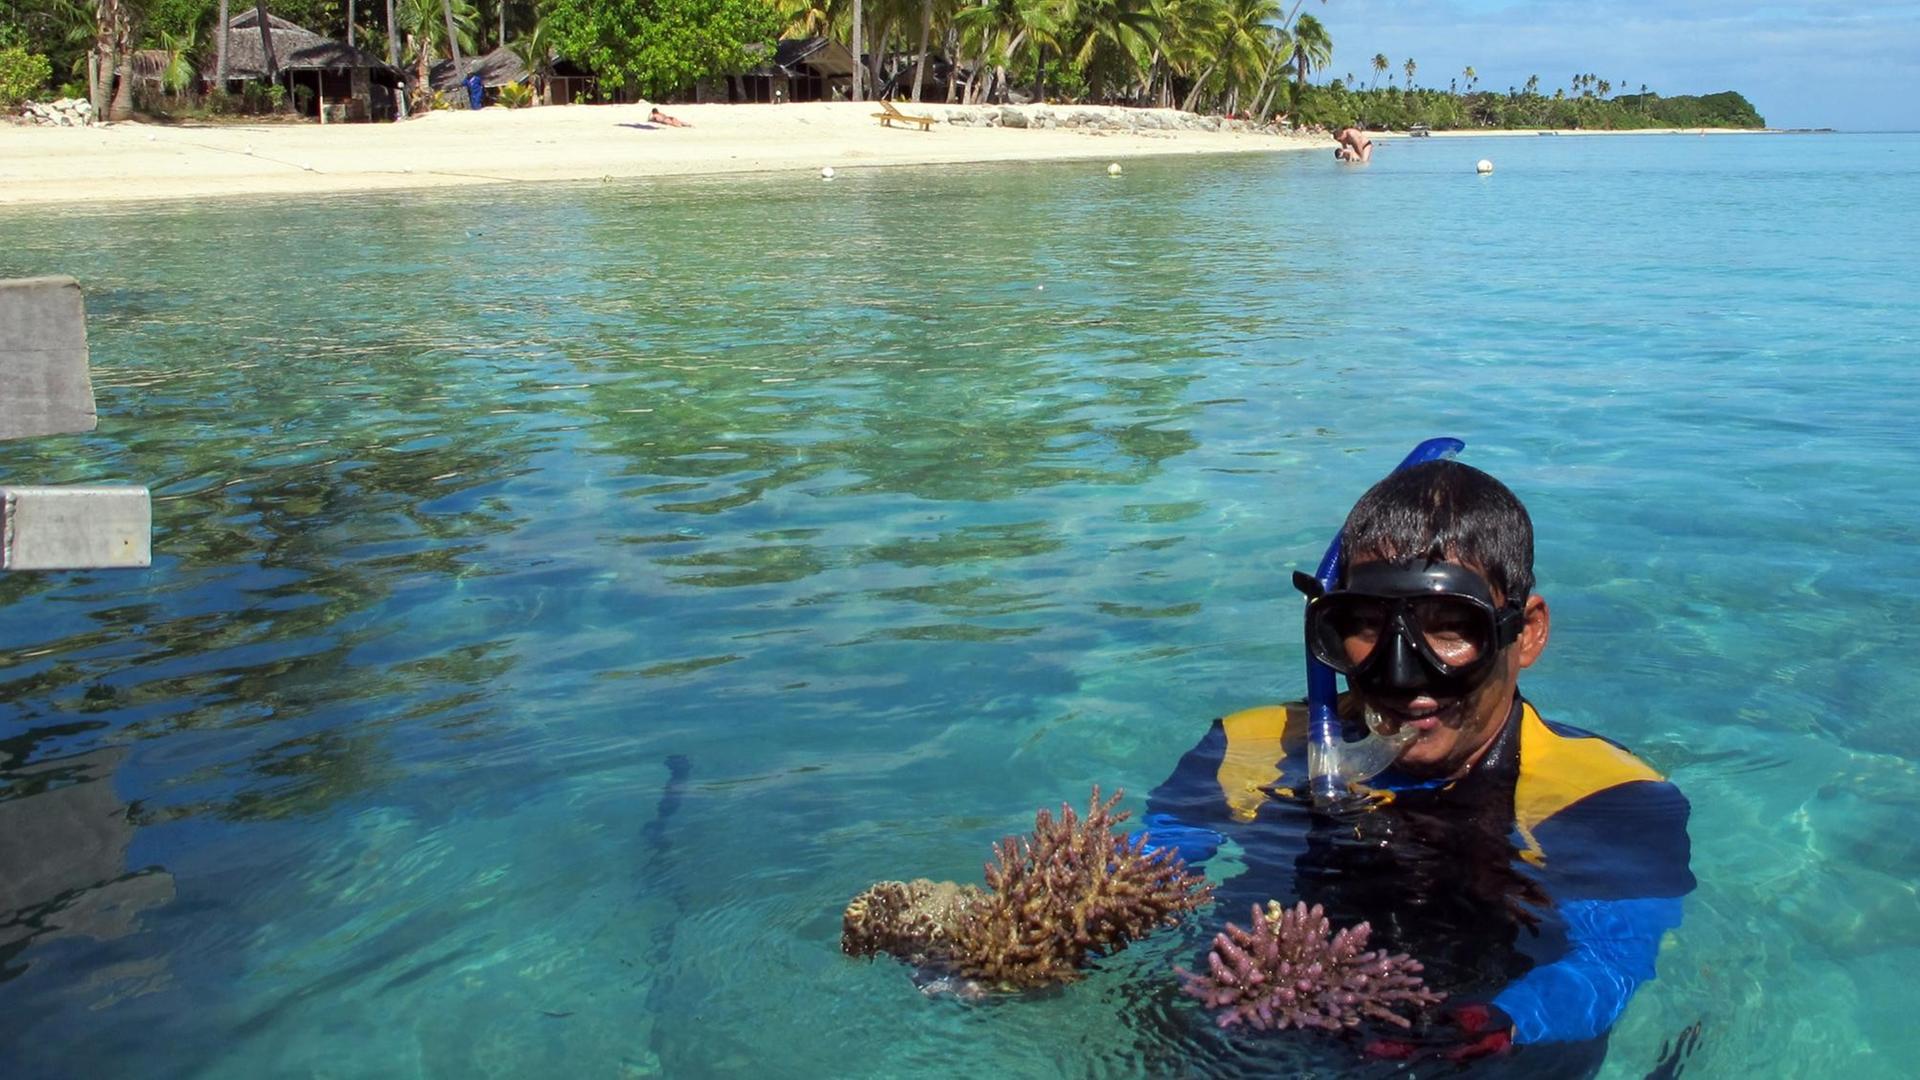 Michael Wong, Animateur in einer Hotelanlage auf der Insel Malolo in Fidschi, taucht am 15.07.2012 in seinem Korallengarten und birgt Dornenkronenseesterne.